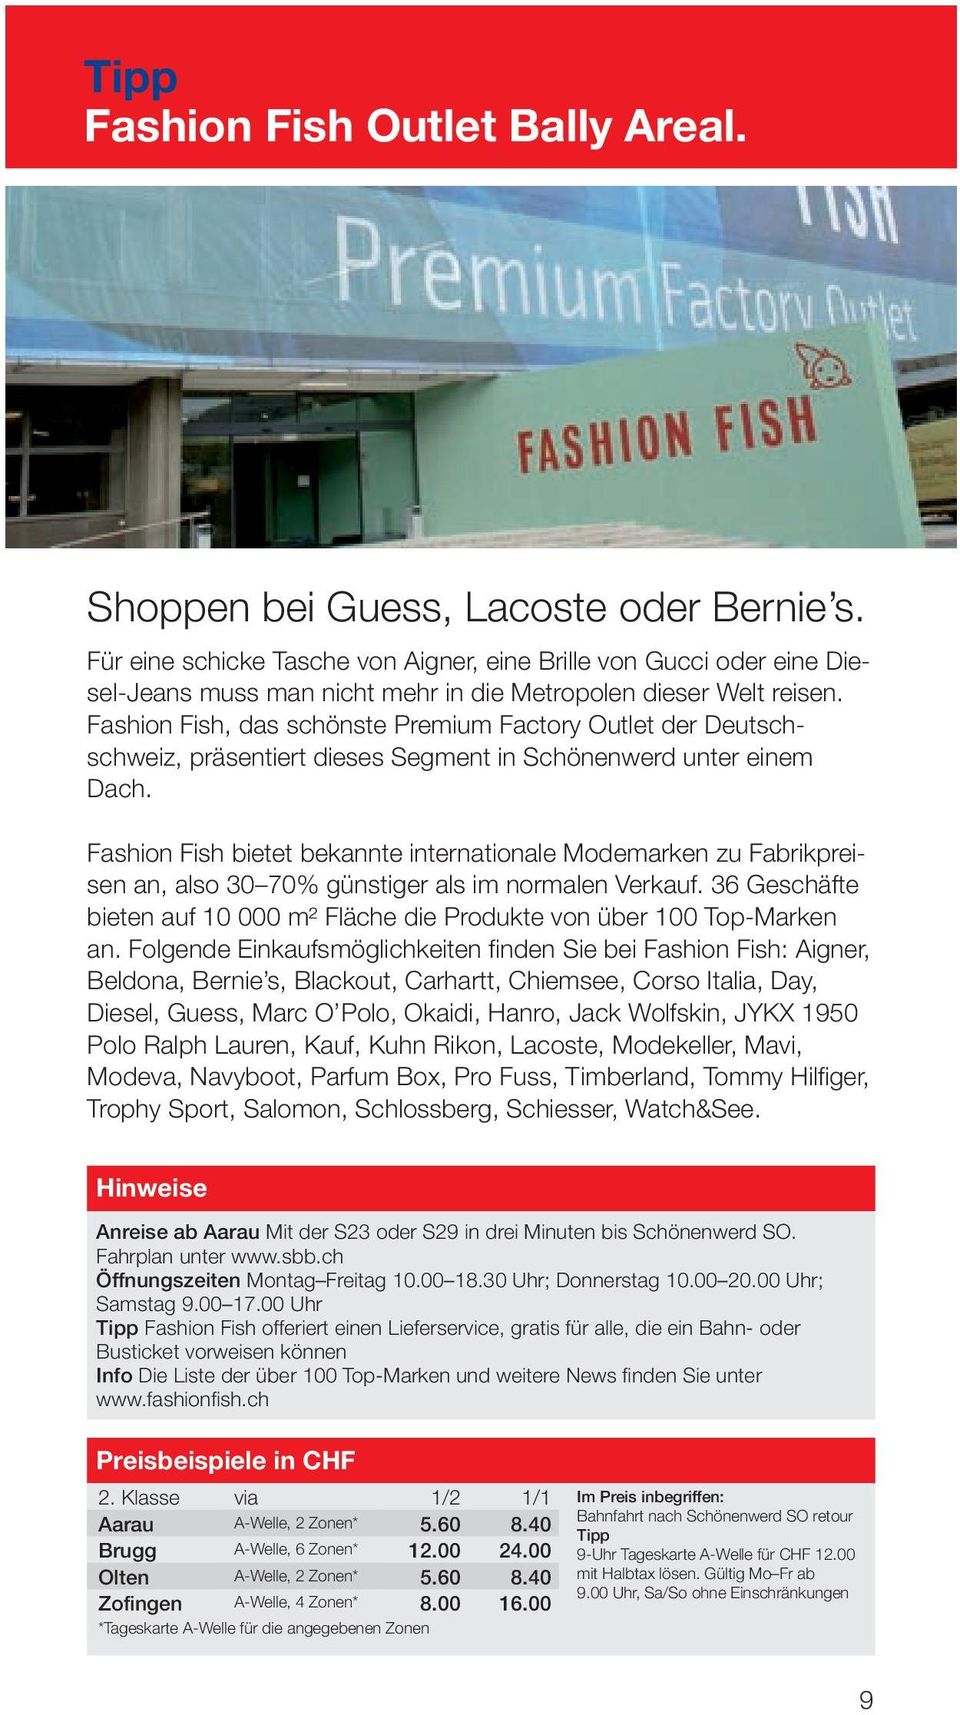 Fashion Fish, das schönste Premium Factory Outlet der Deutschschweiz, präsentiert dieses Segment in Schönenwerd unter einem Dach.